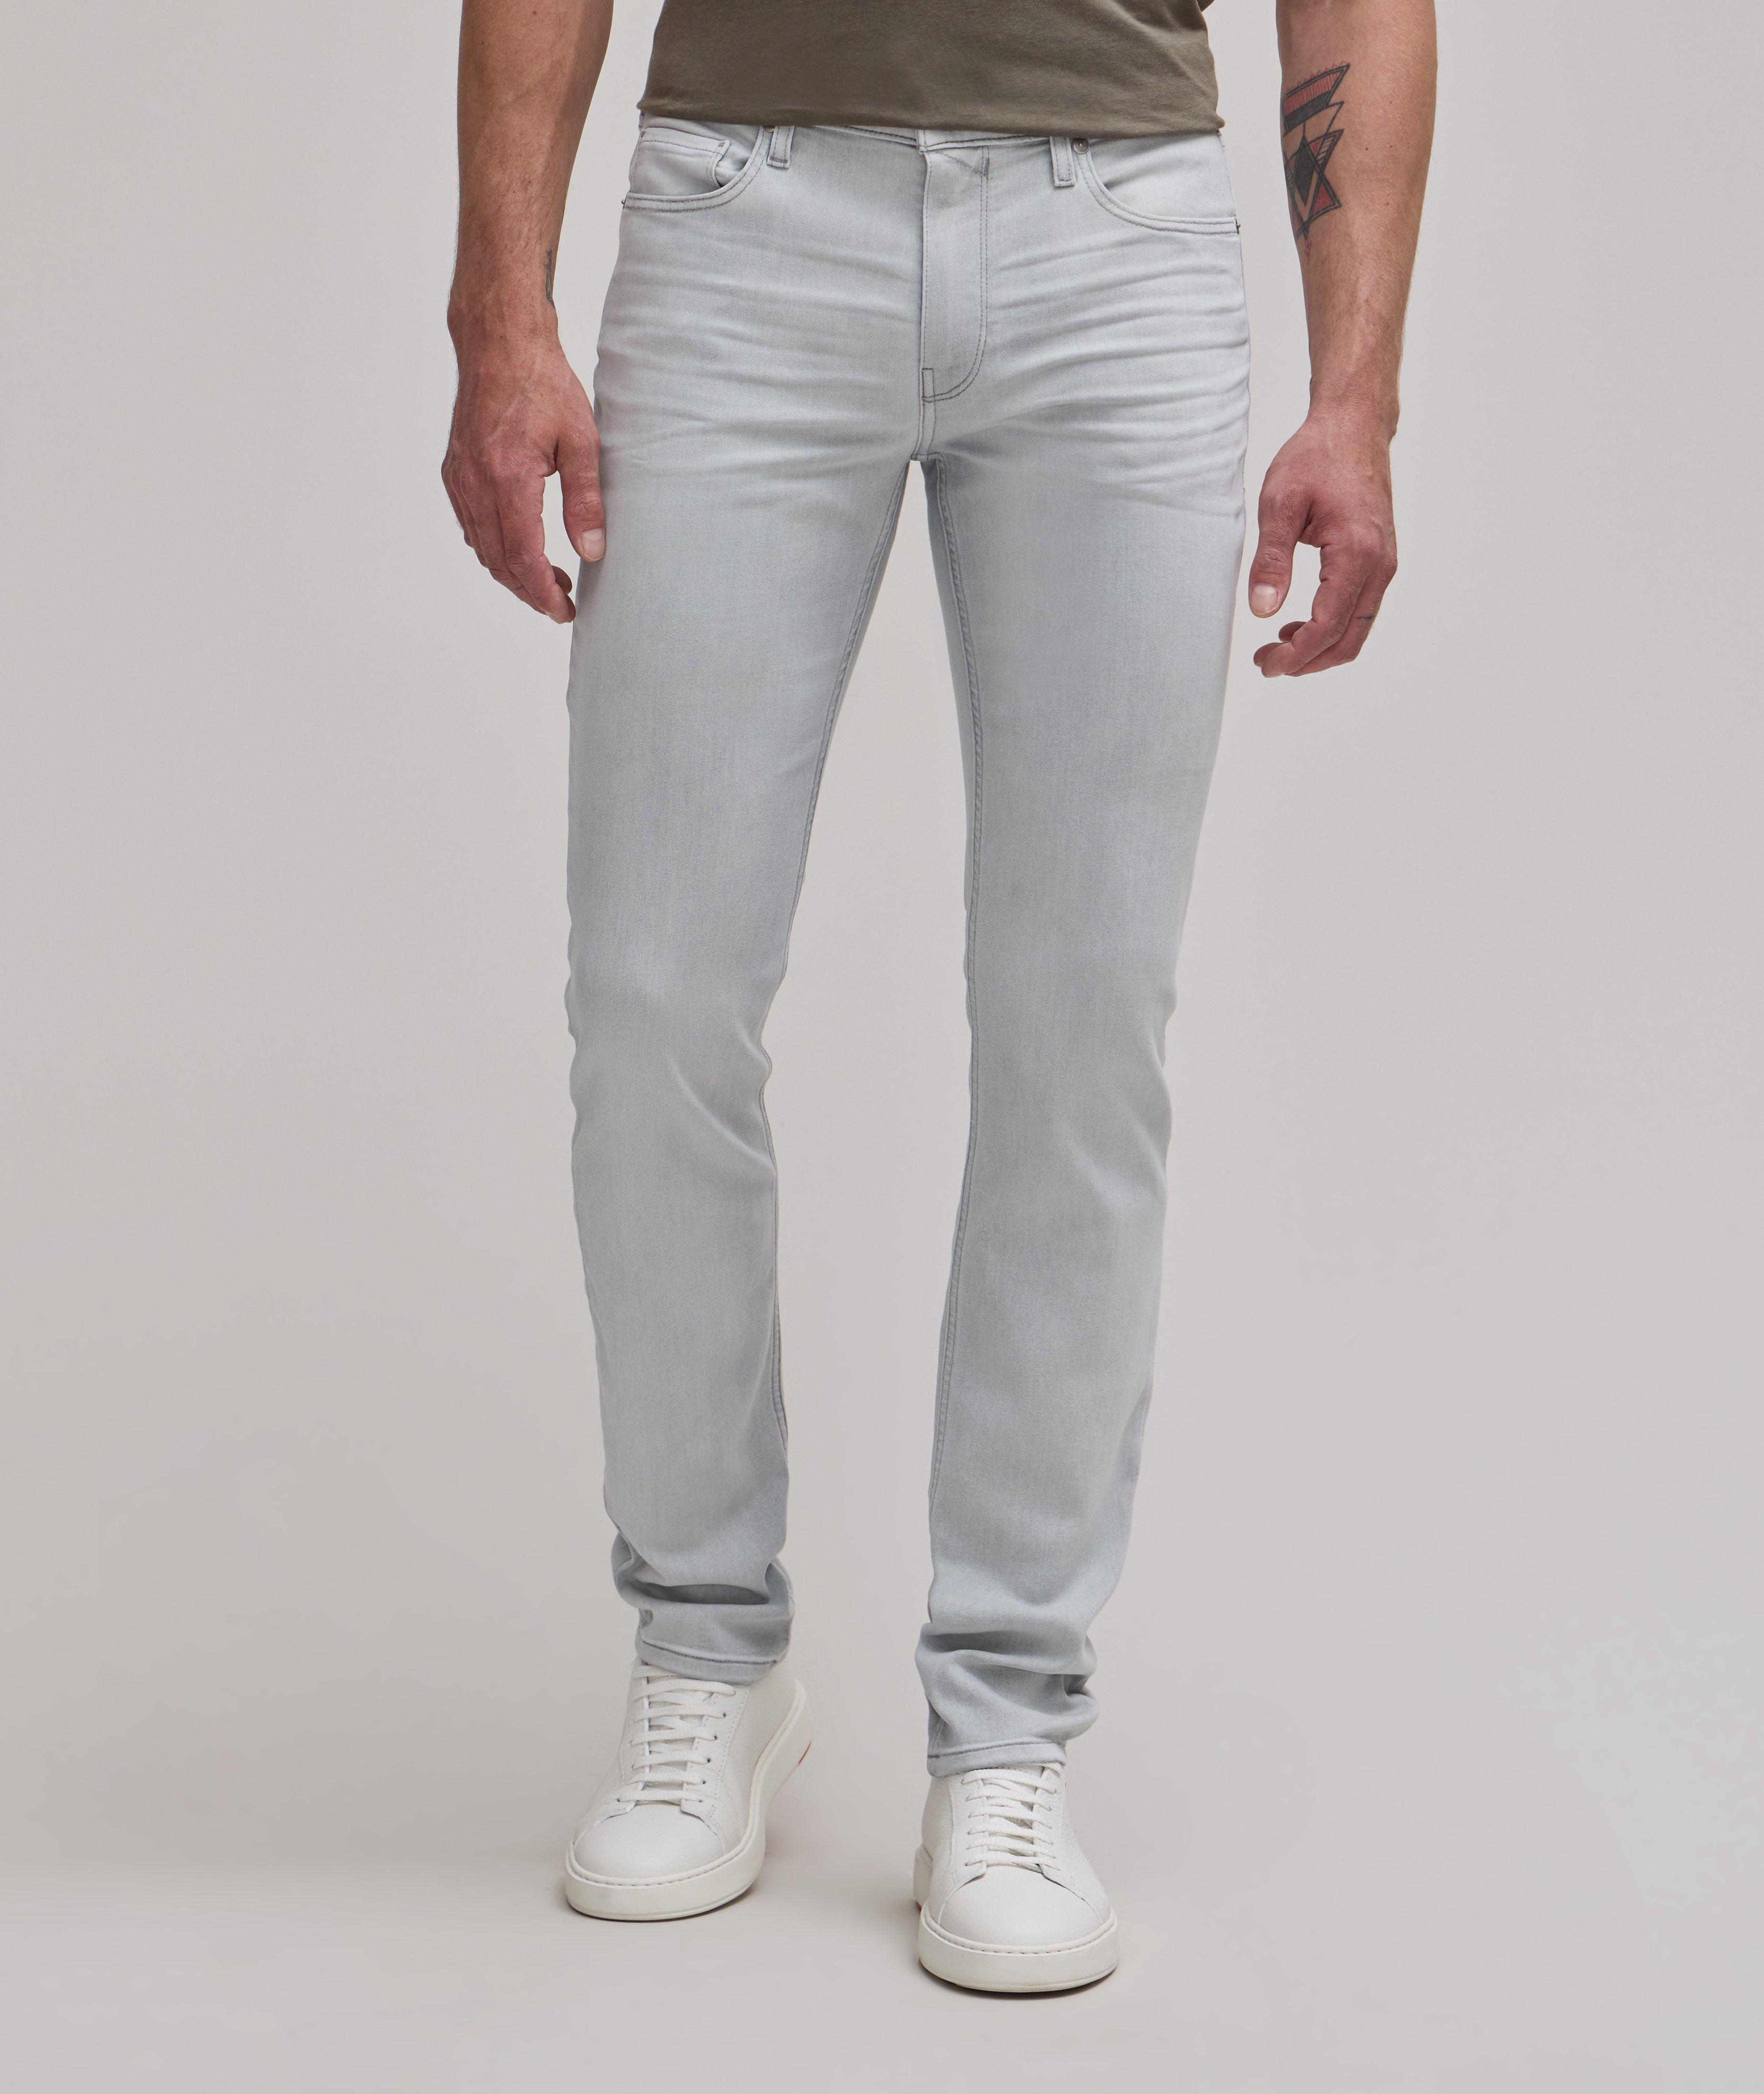 Lennox Slim-Fit Transcend Jeans image 1